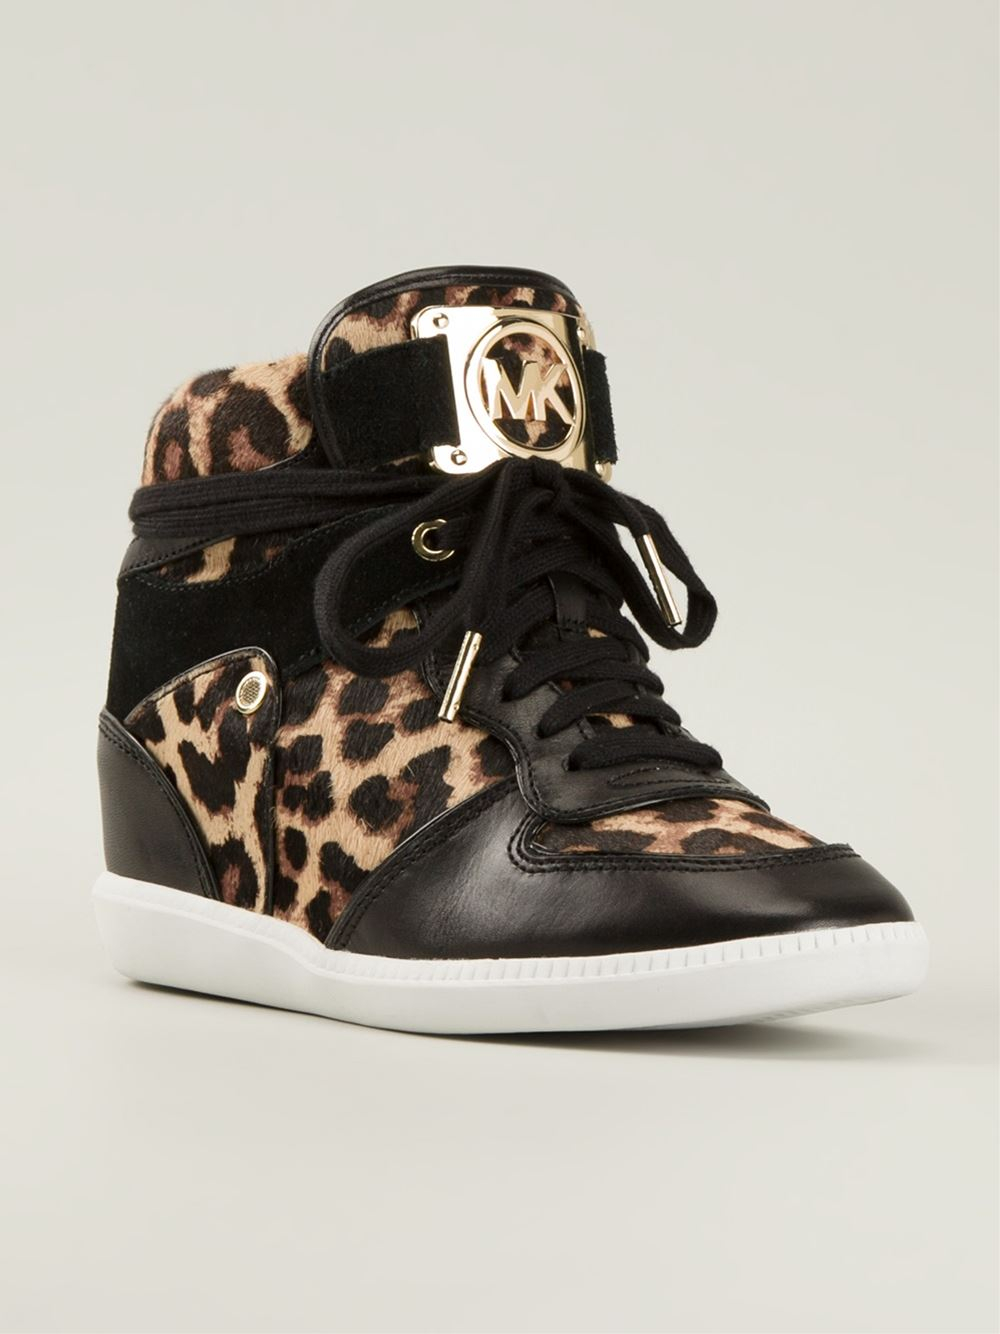 Lyst - Michael Michael Kors Leopard Print Concealed Wedge Sneakers in Black